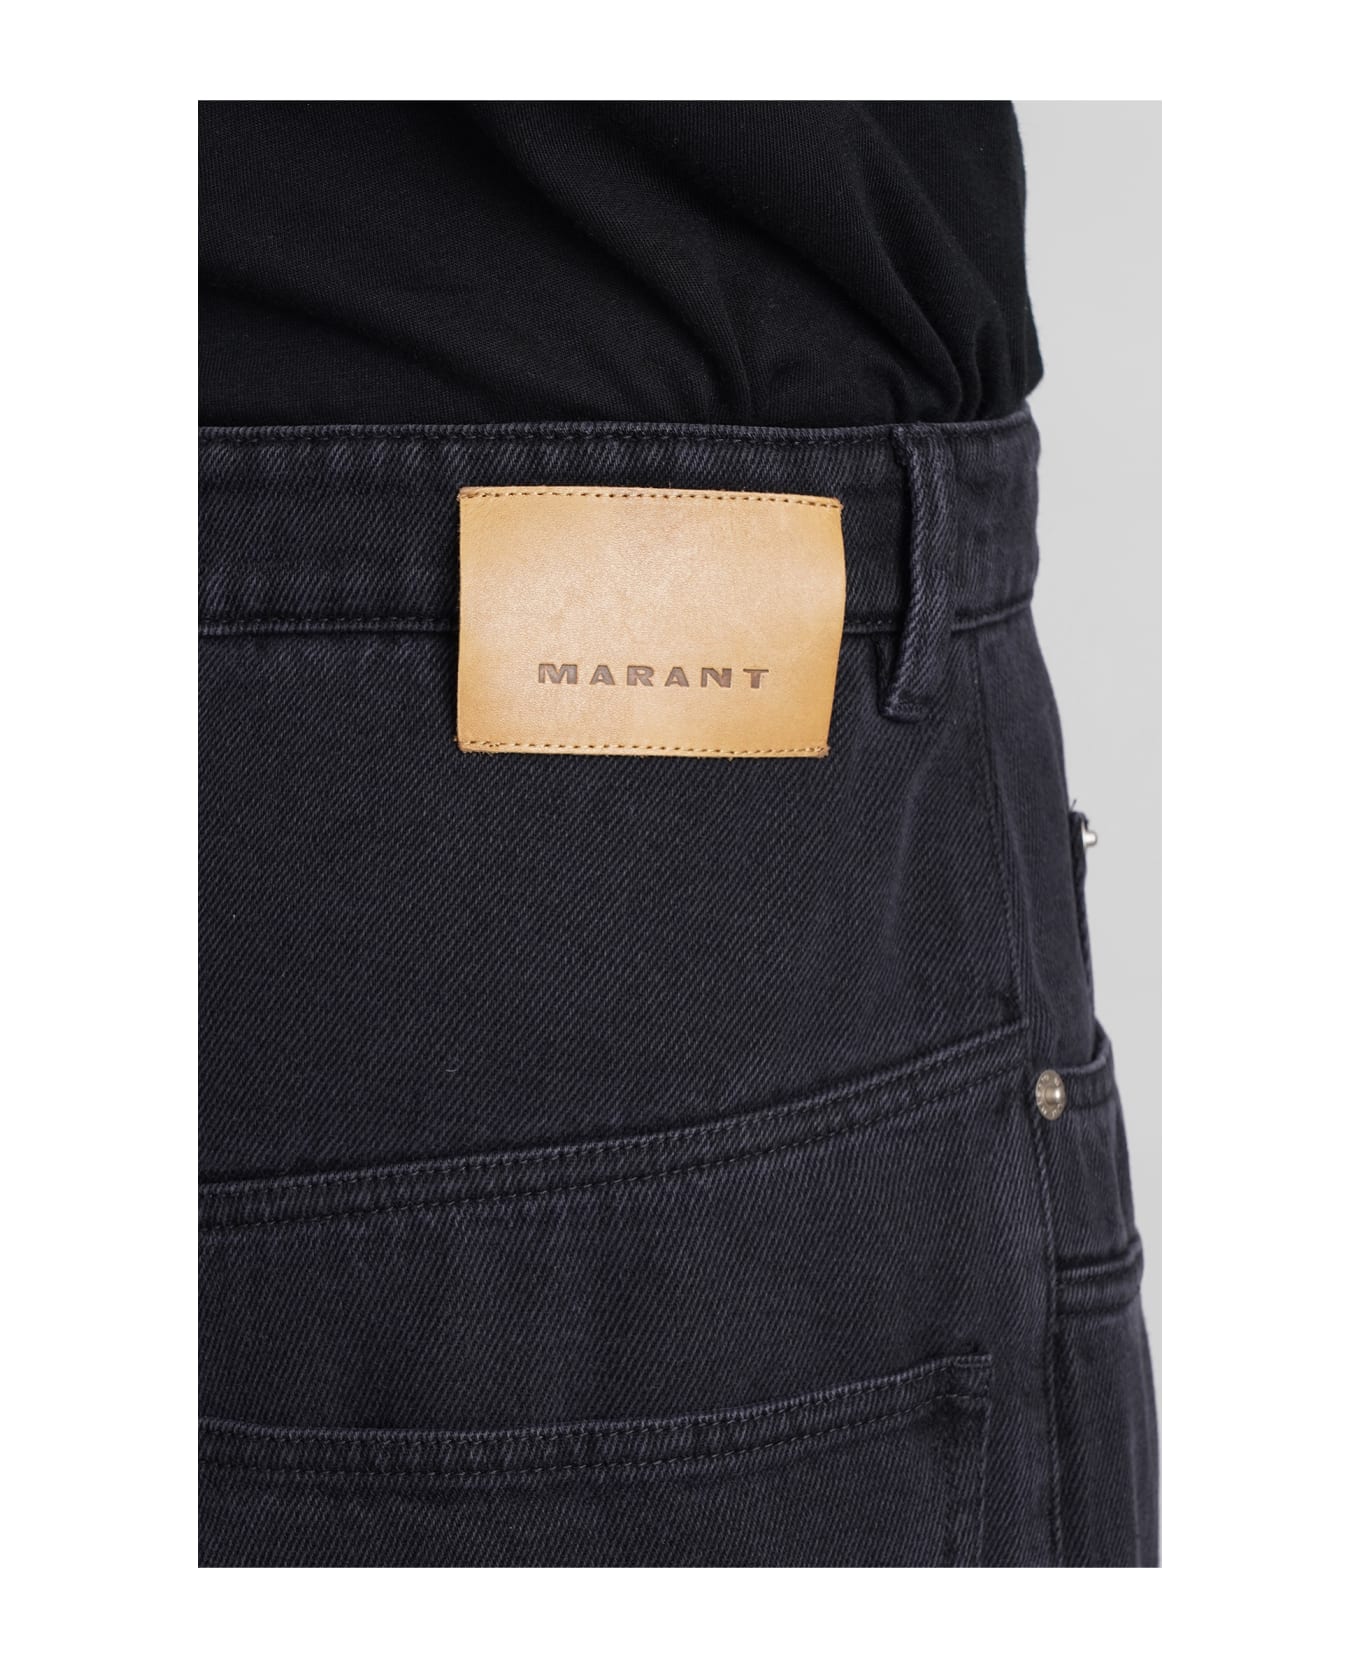 Isabel Marant Teren Jeans In Black Cotton - BLACK